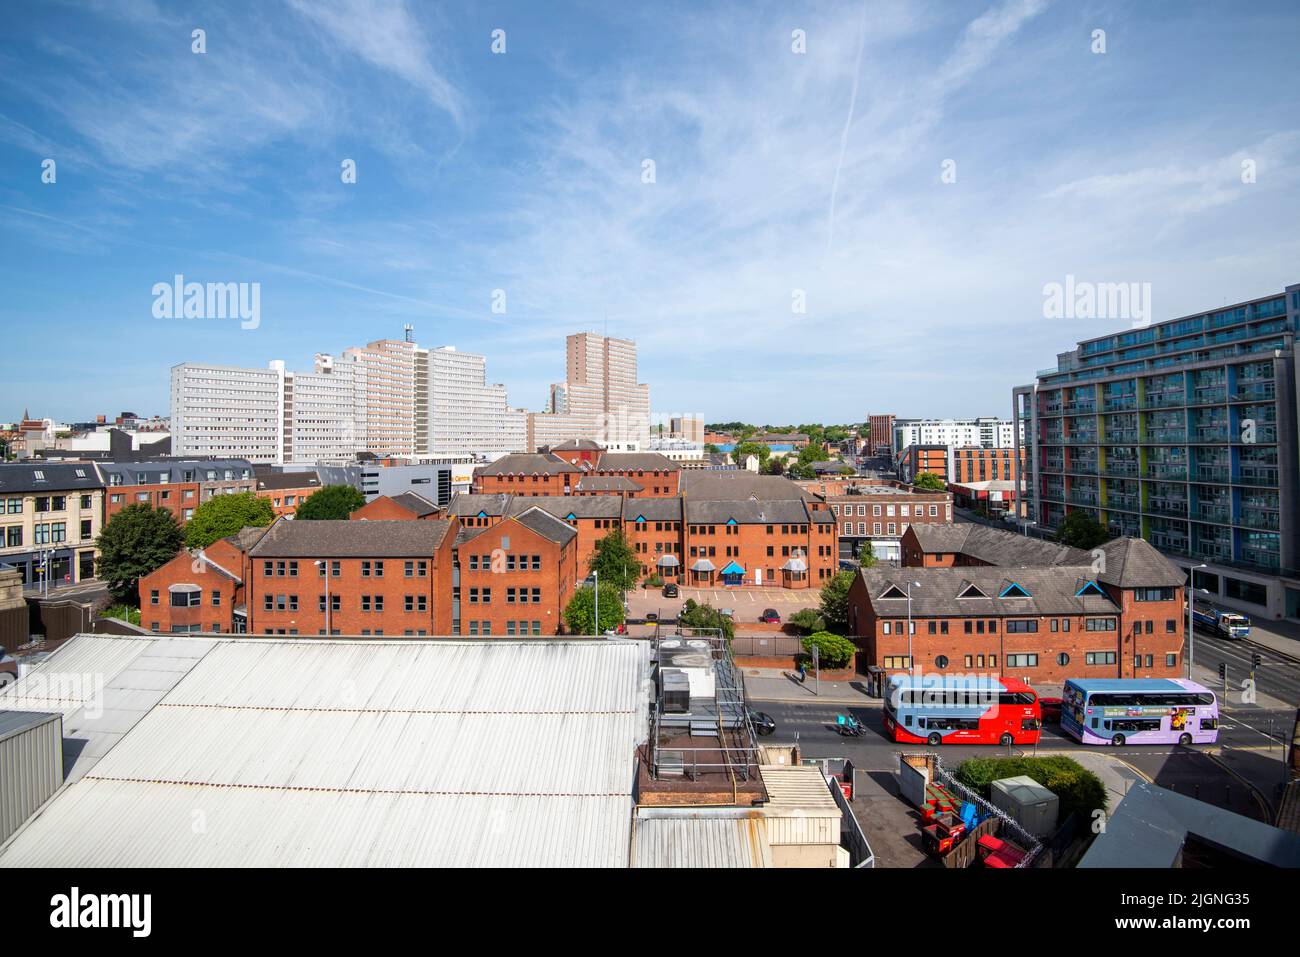 Vista hacia el norte desde el tejado del Instituto Confetti en el centro de Nottingham, Nottinghamshire, Inglaterra, Reino Unido Foto de stock